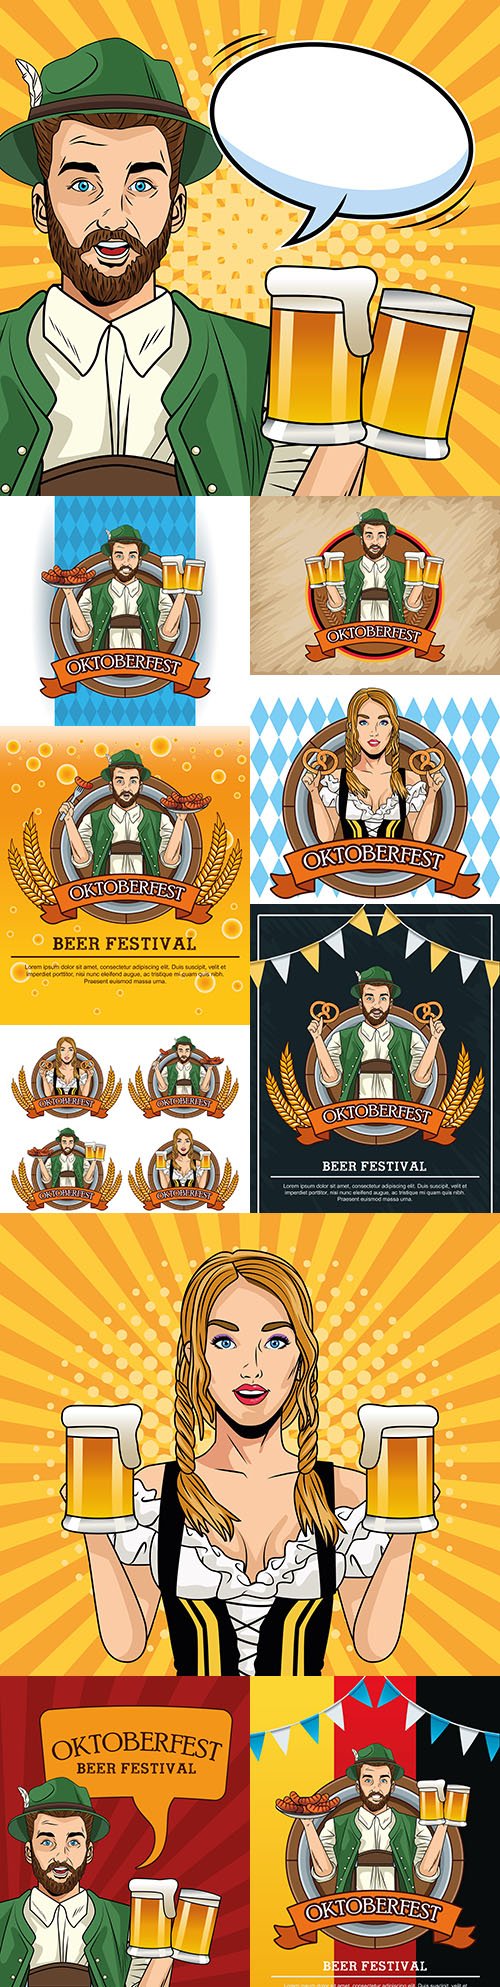 Oktoberfest festival beer party vintage illustration 6